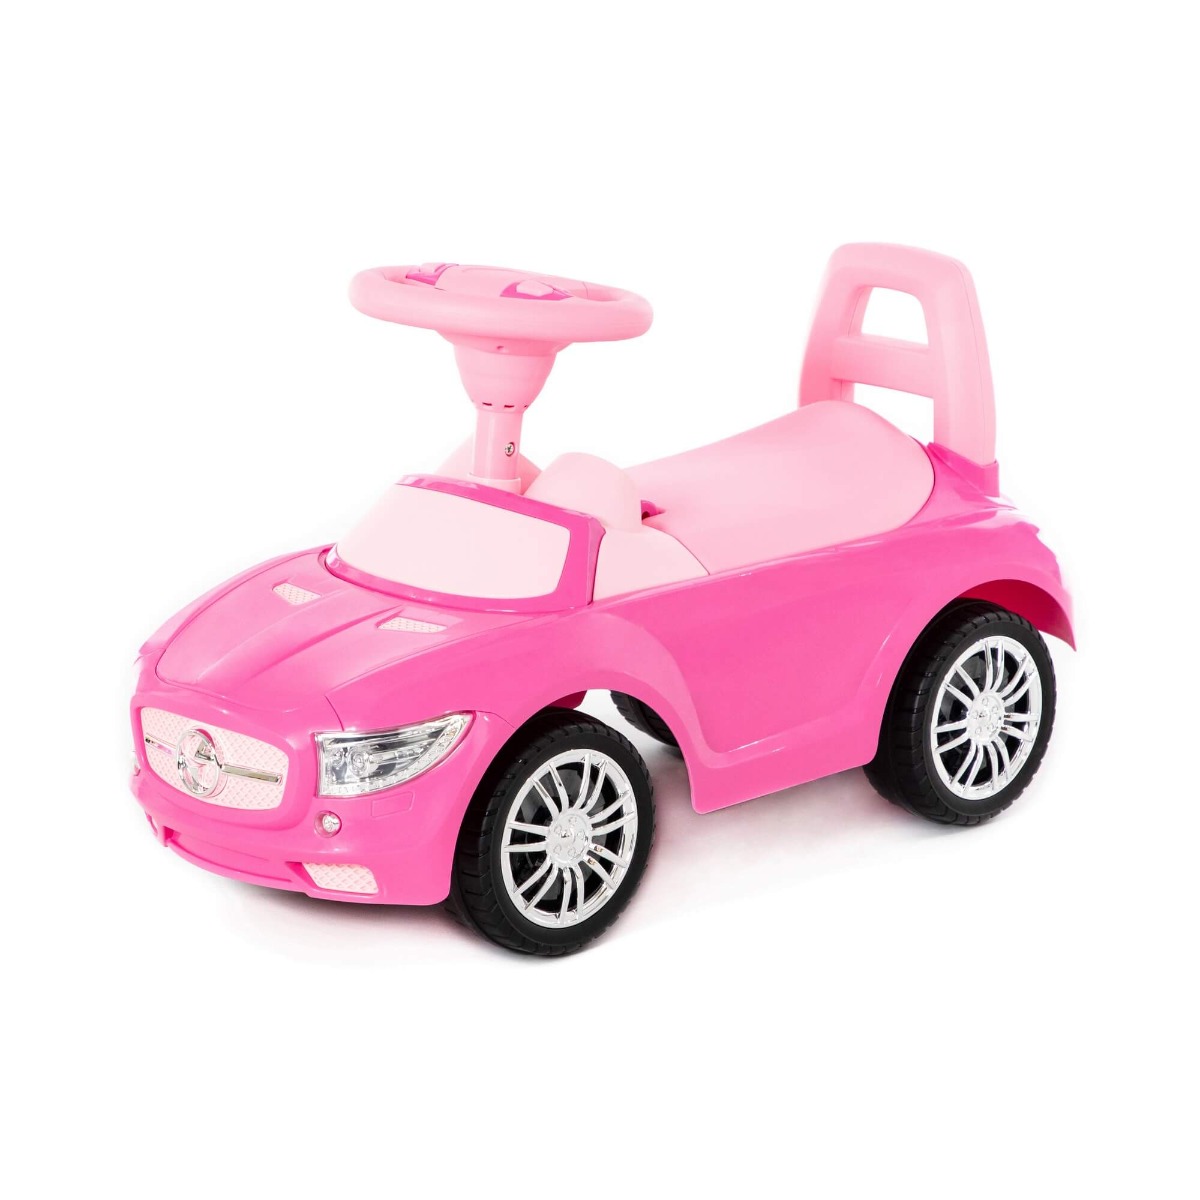 დასაჯდომი მანქანა "სუპერქარი" ვარდისფერი - Polesie - SuperCar Ride-on - Pink pg-81144color ვარდისფერი 